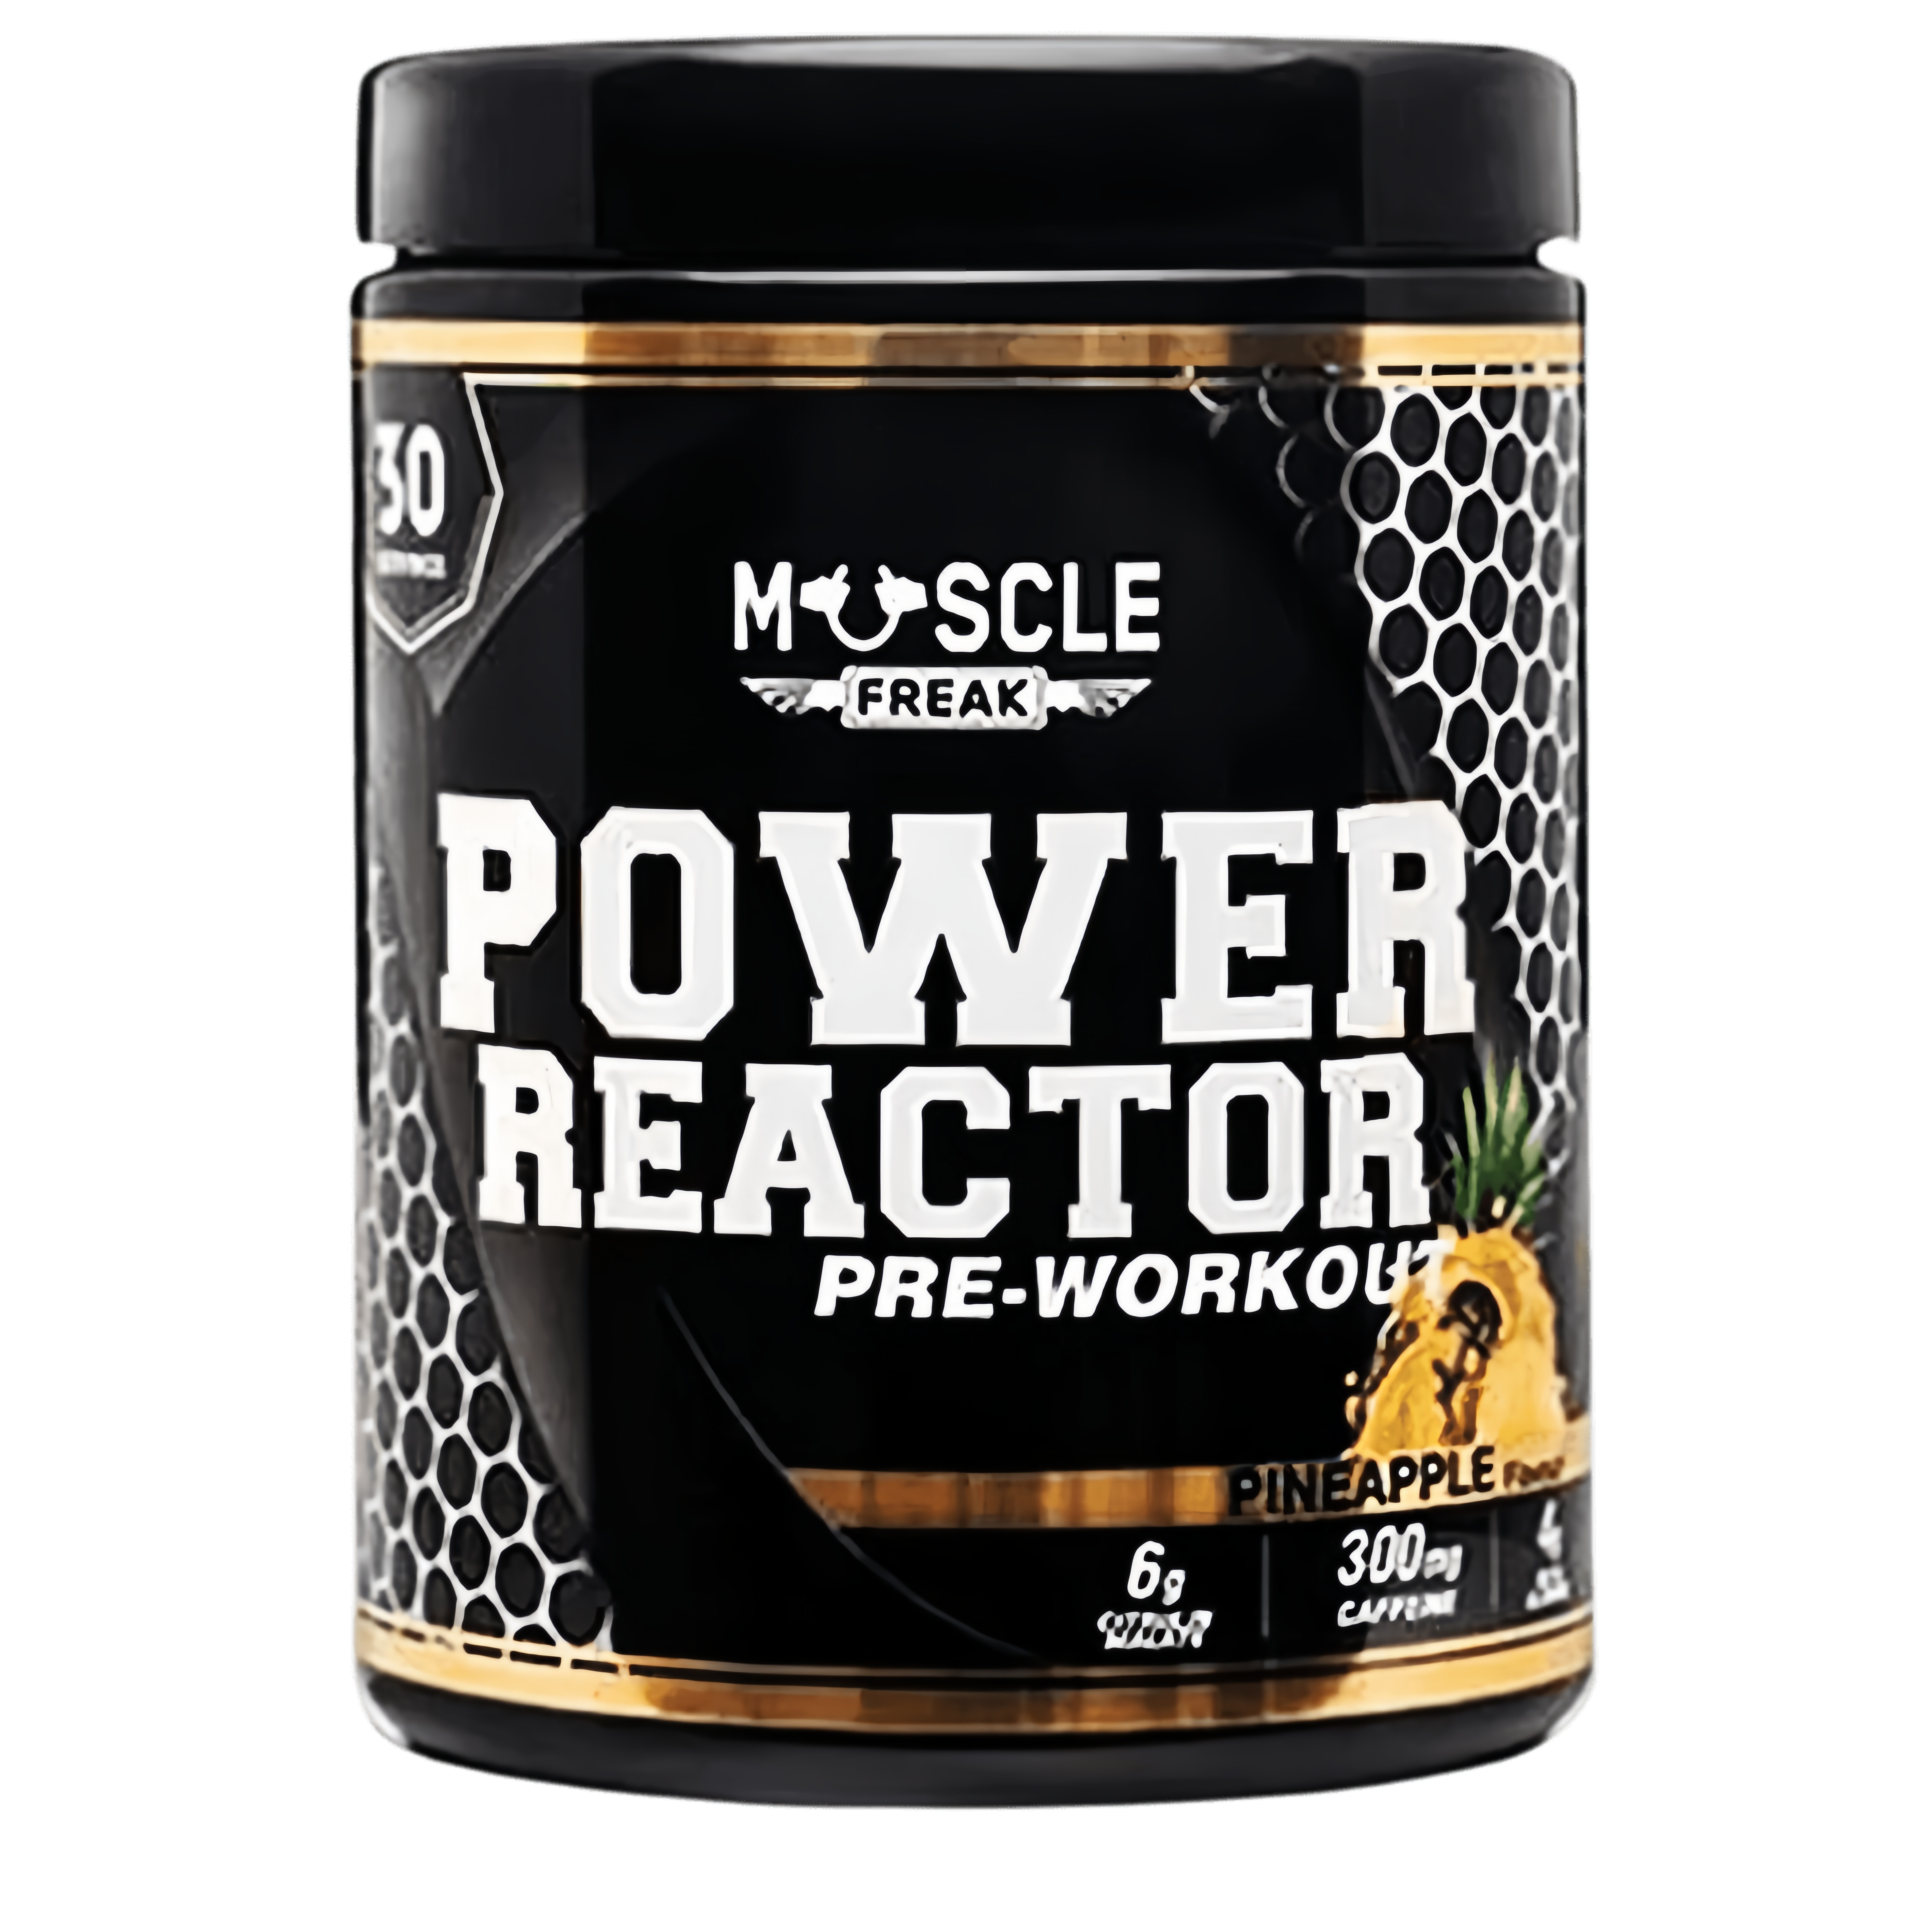 Muscle Freak Power Reactor